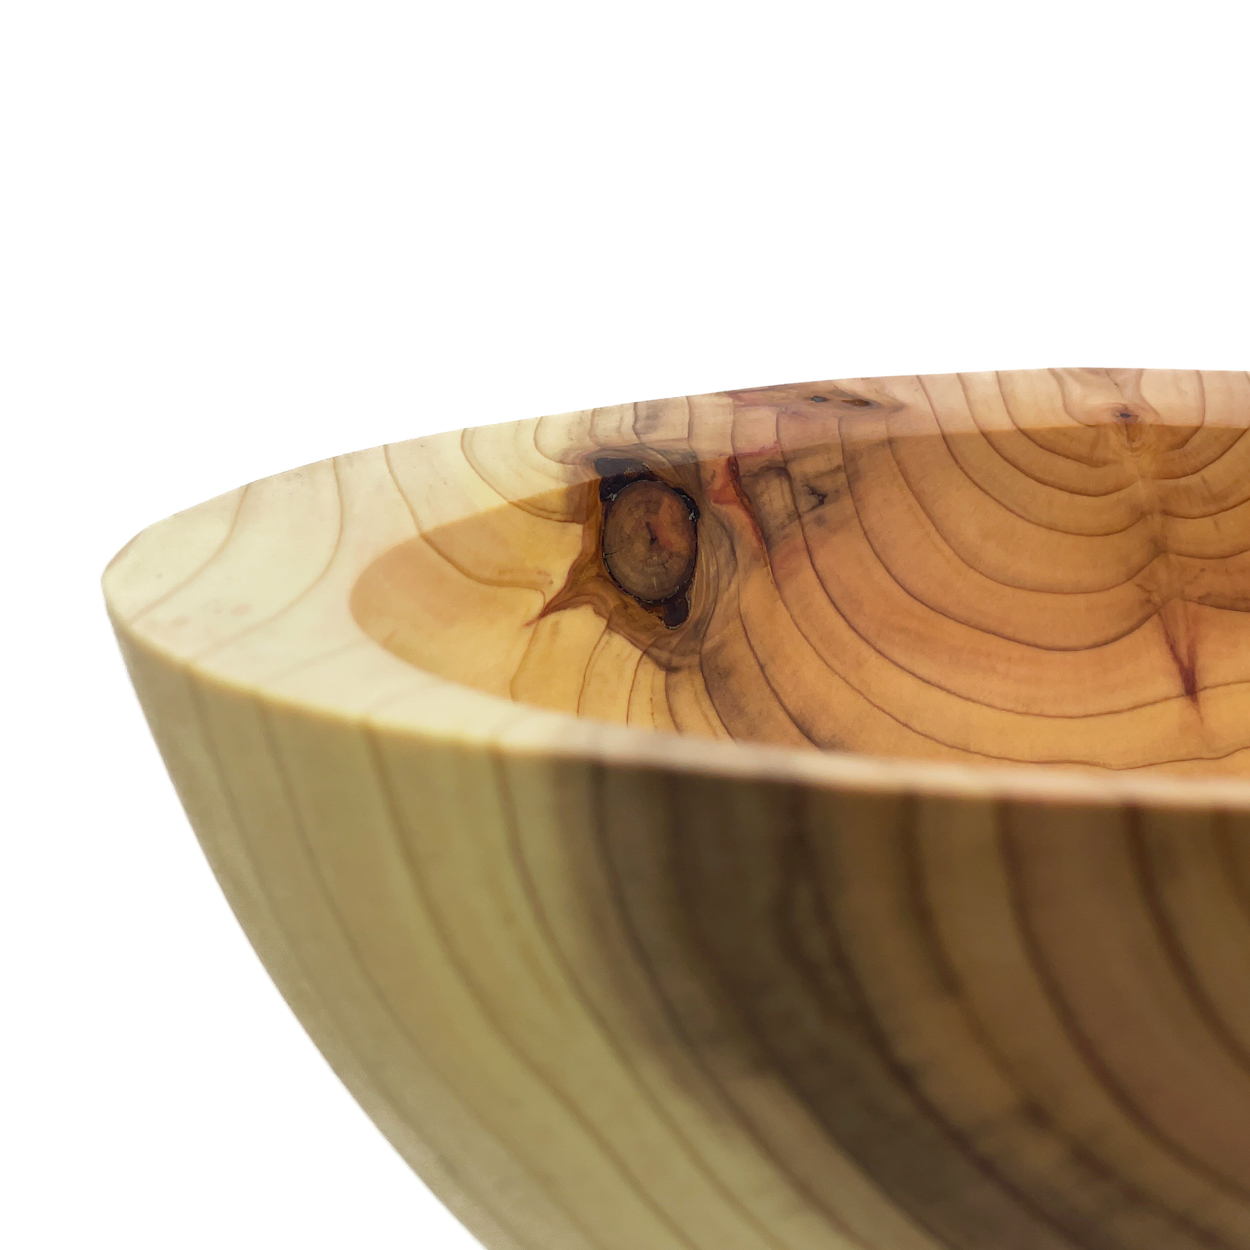 Schale aus Mammutbaum (Sequoia)